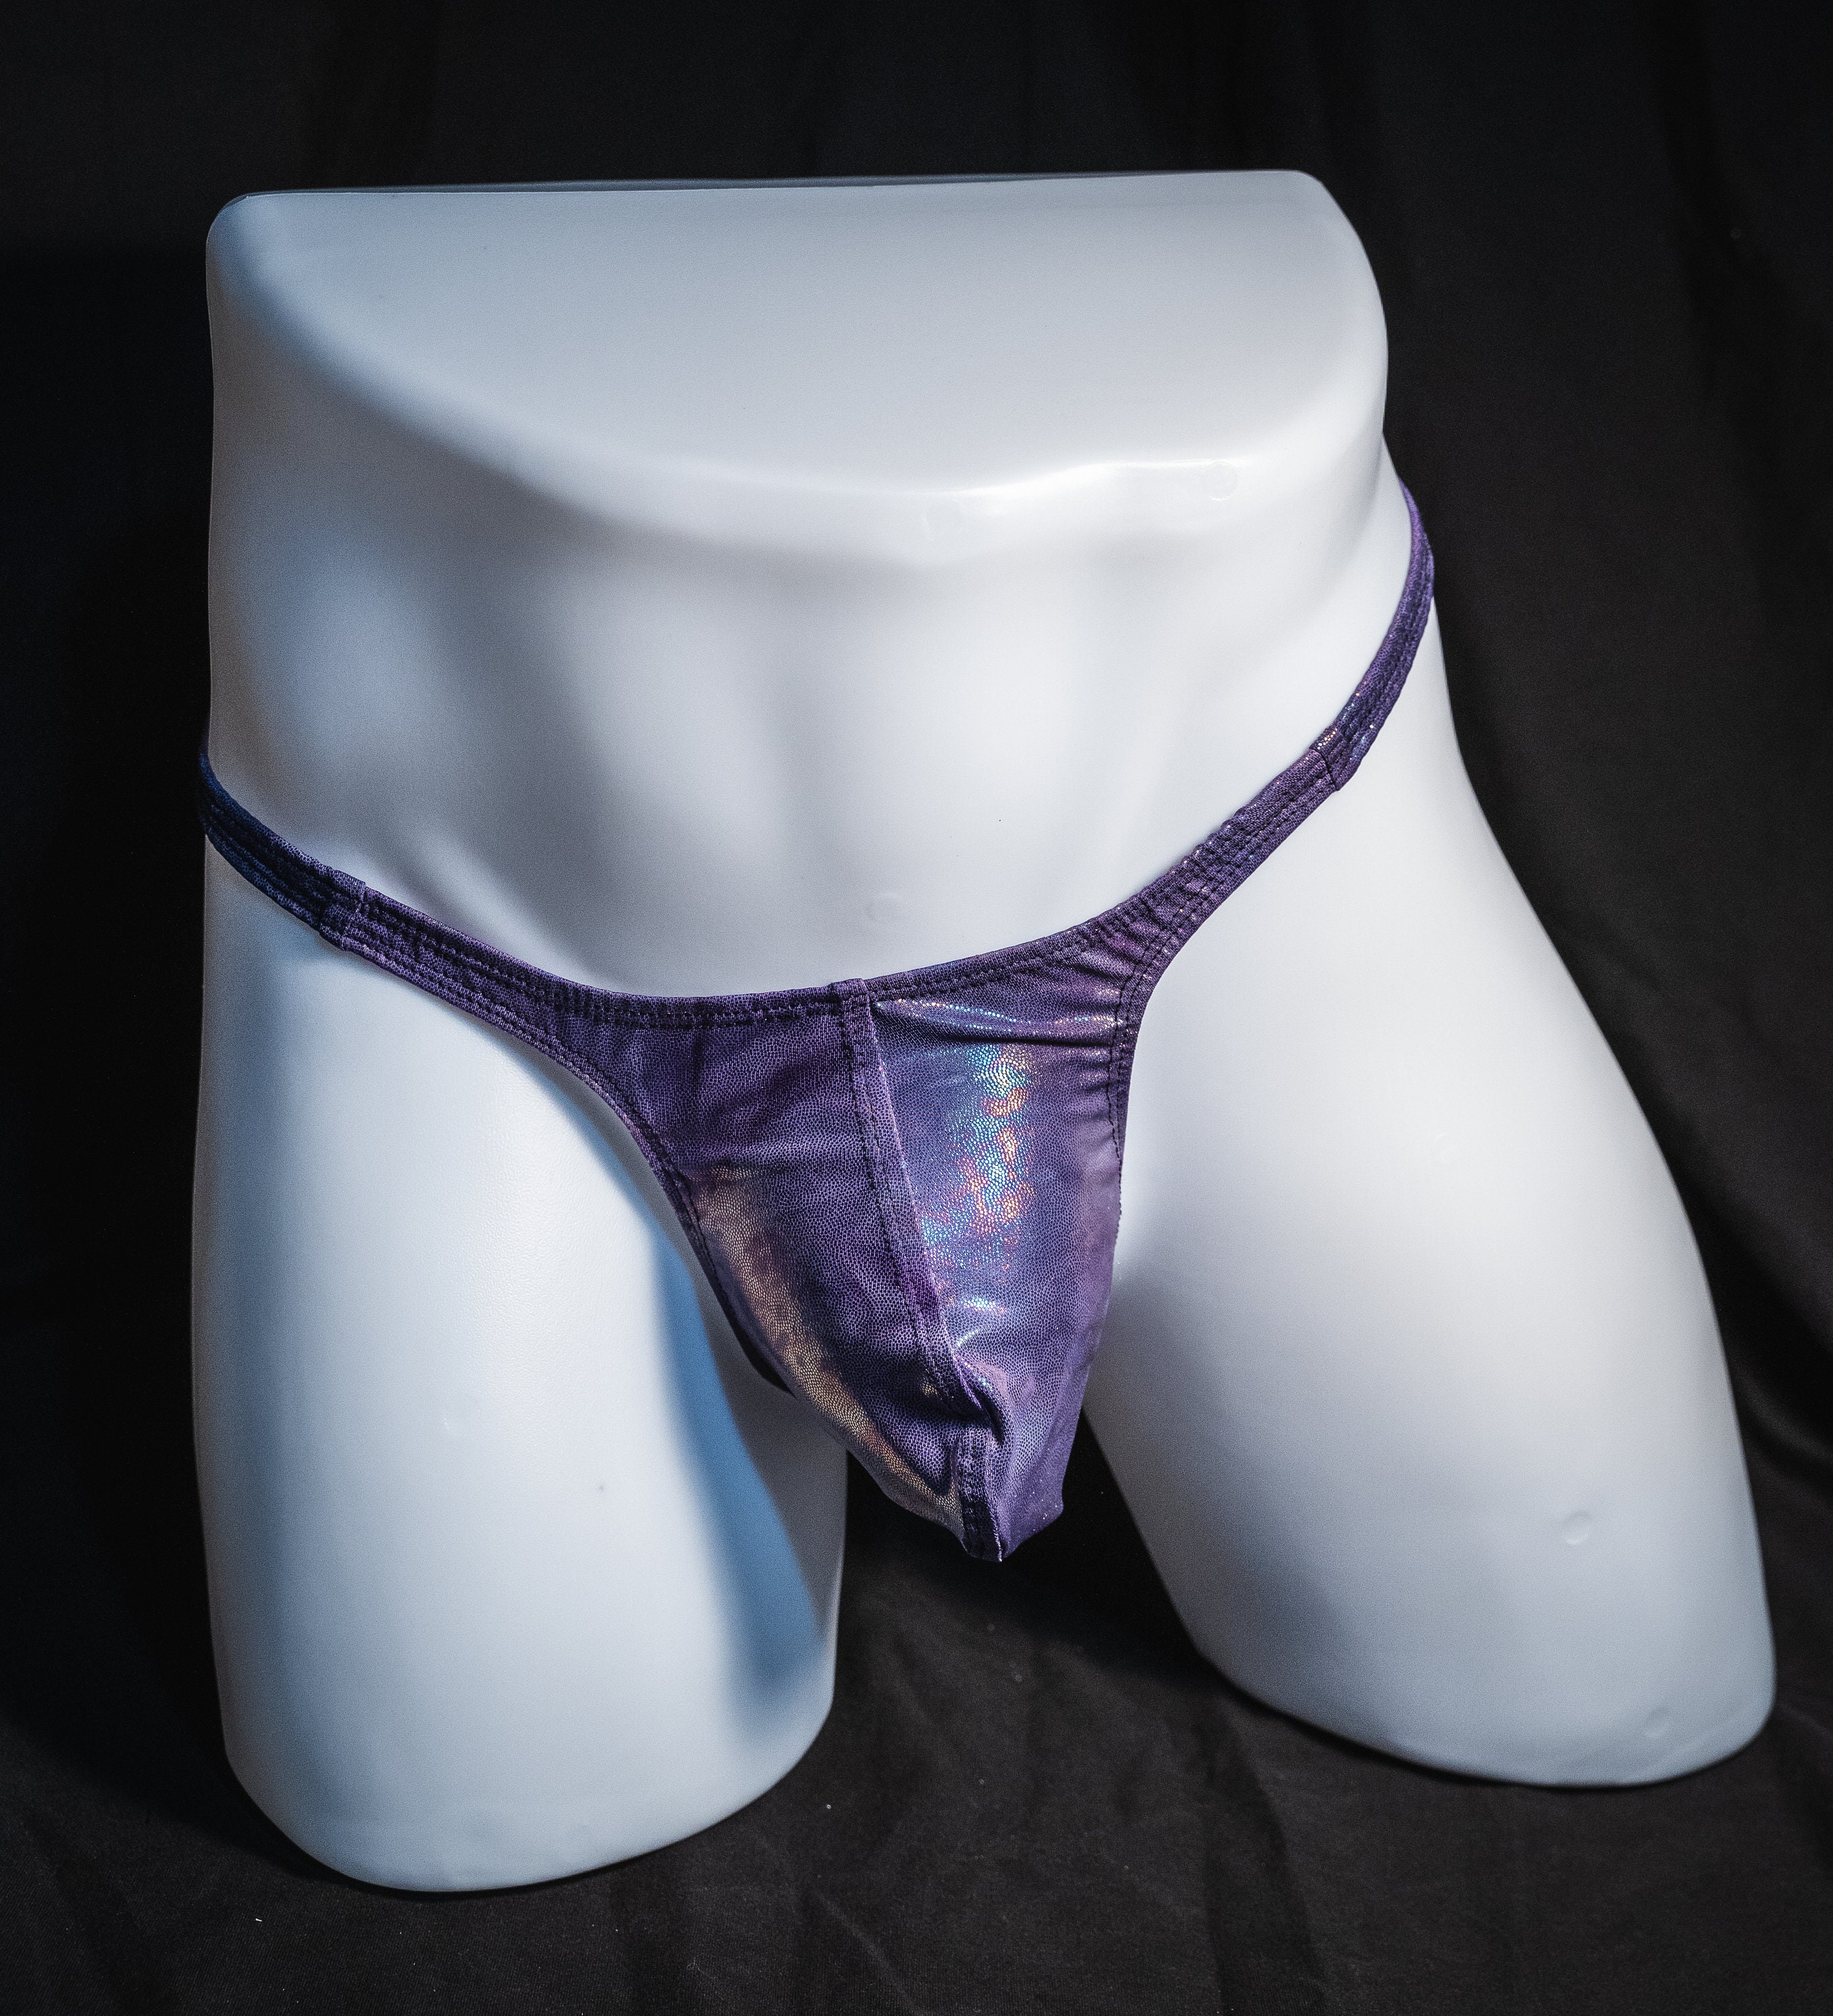 4/8Pack Men Mesh G-string Thong See Through T-back Transparent Panties  Underwear